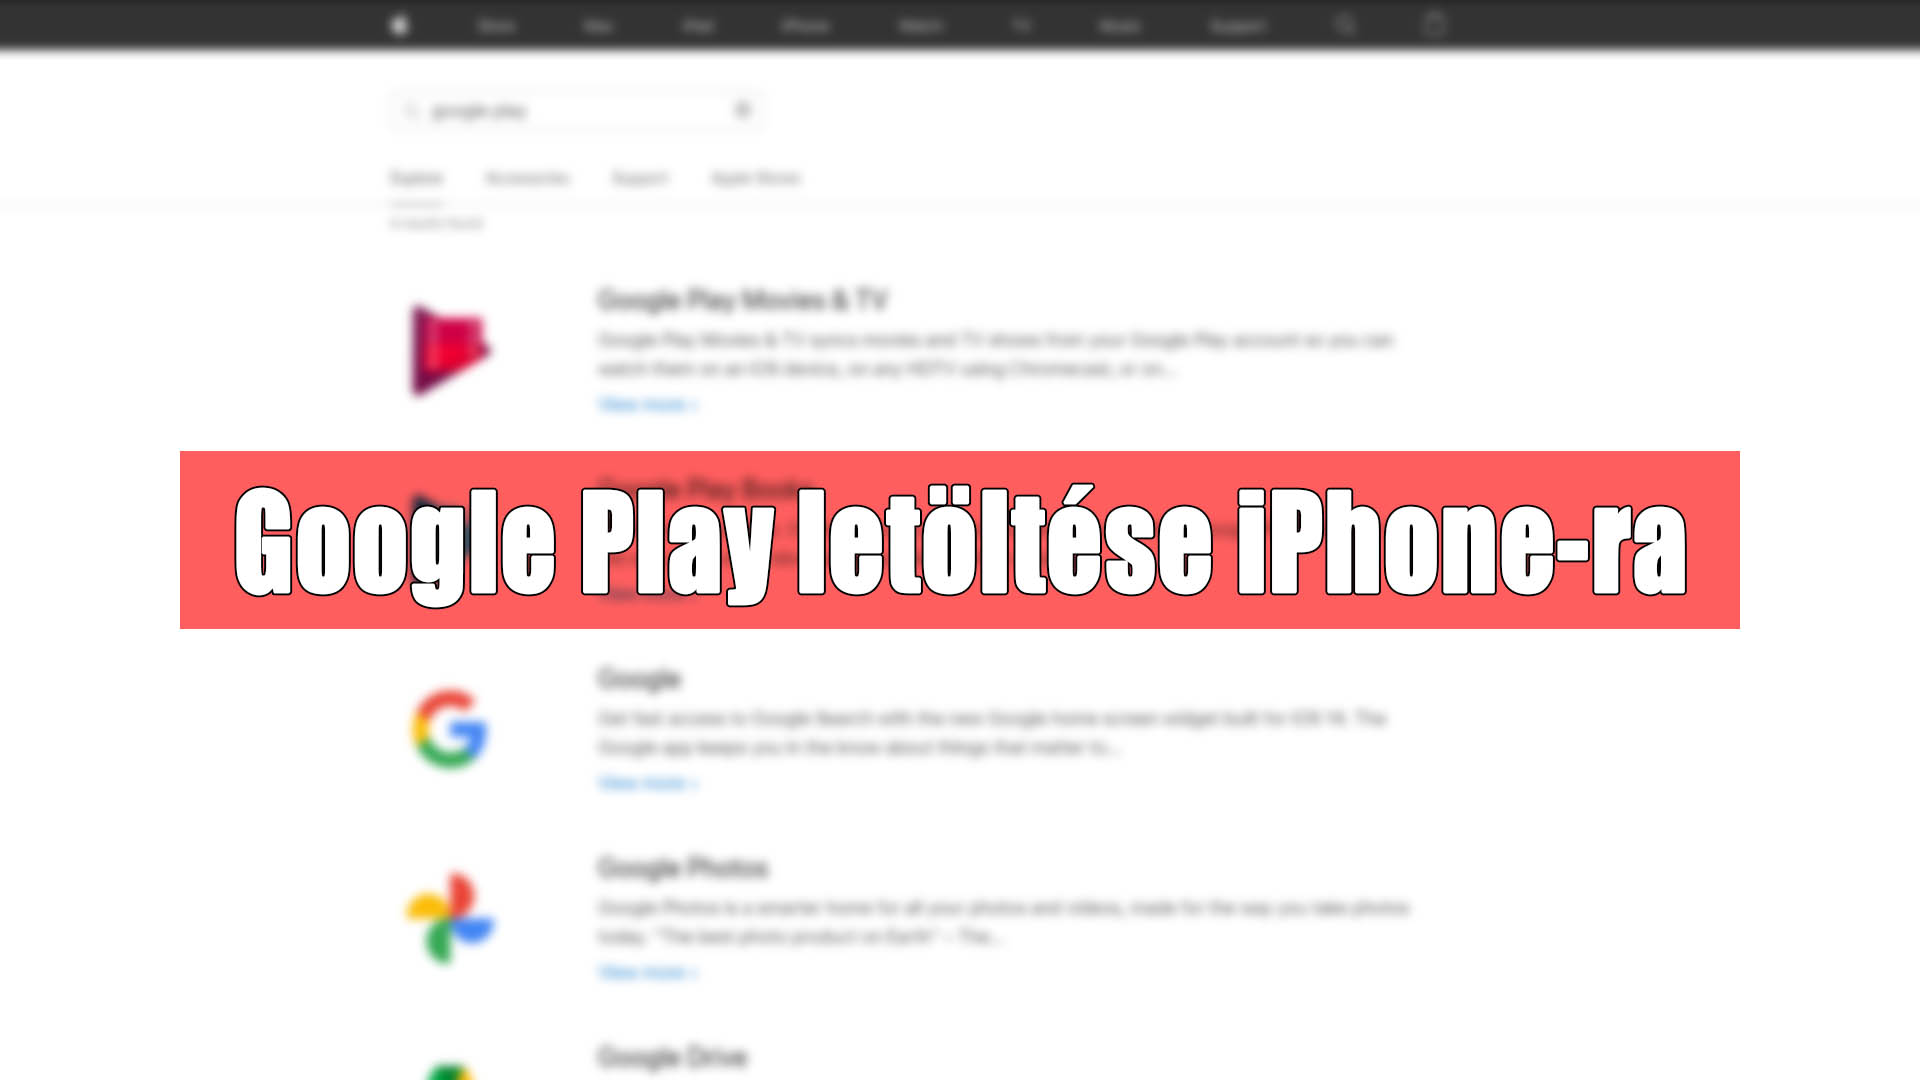 [Google Play letöltése iPhone-ra] Lehetséges a Play Áruház letöltése iPhone-ra? című cikk borítóképe